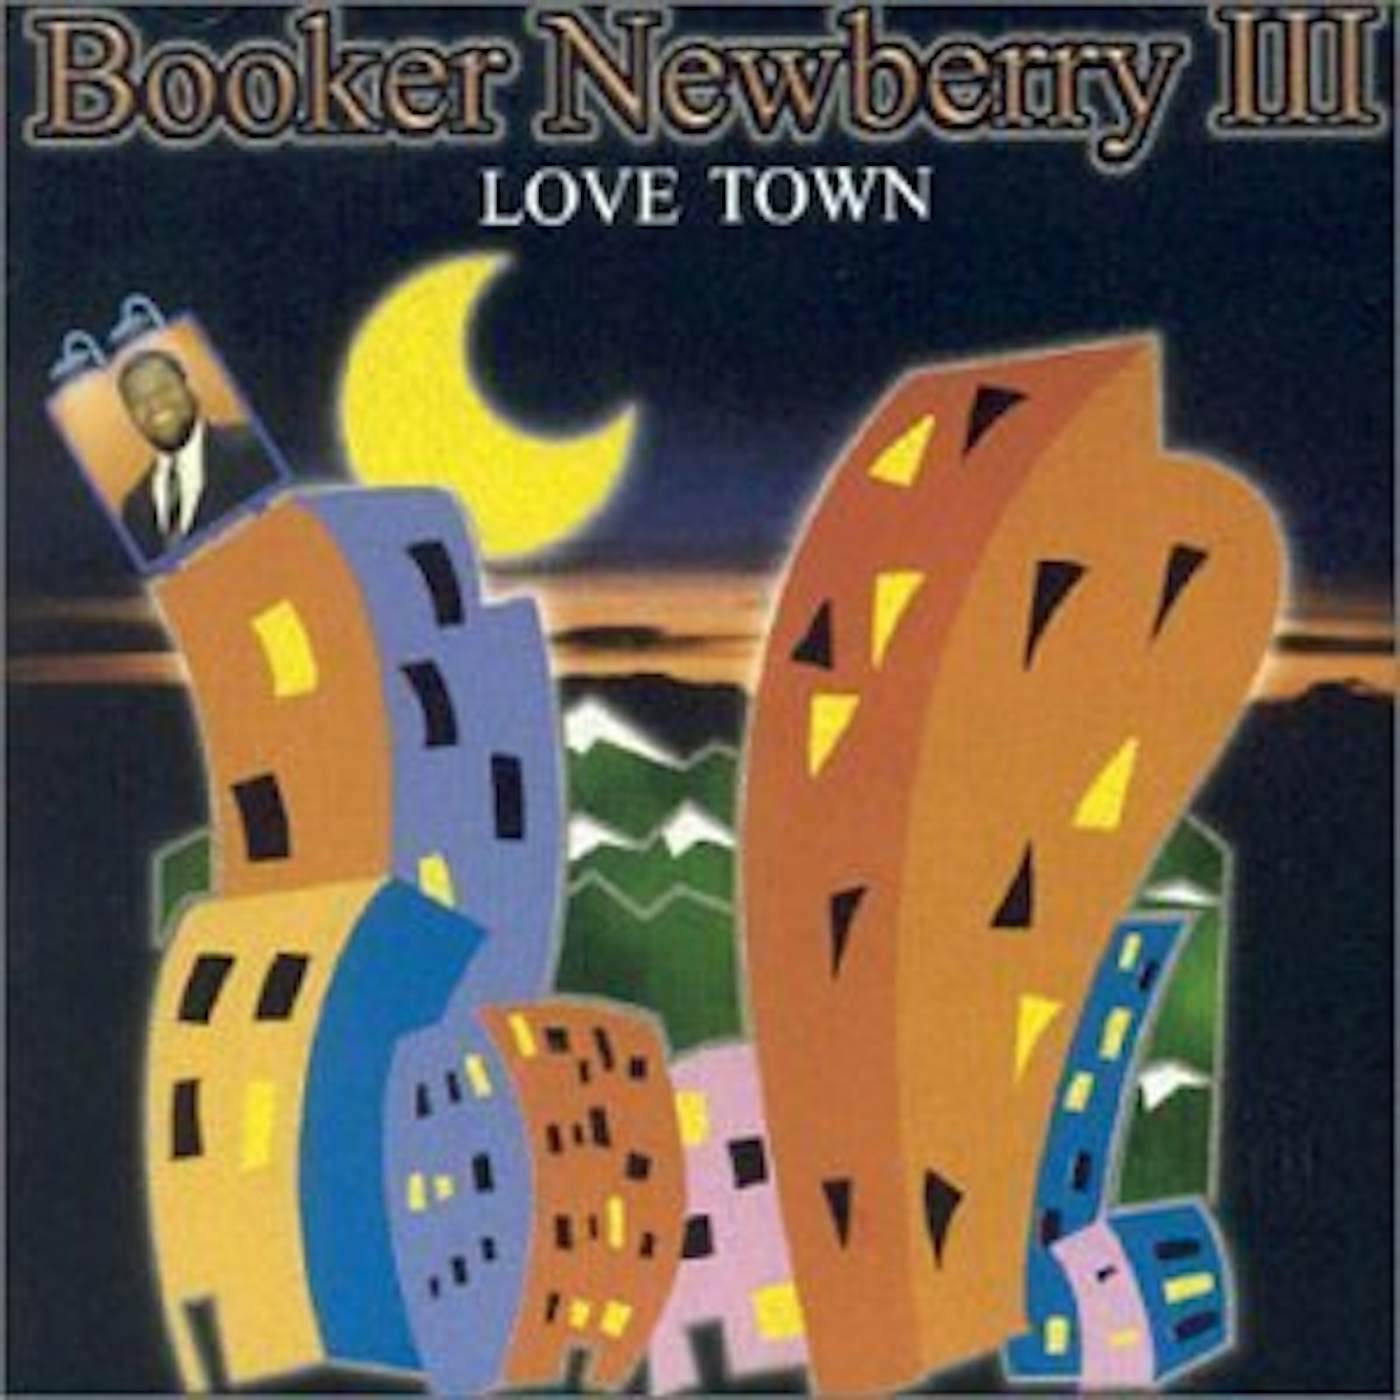 Booker Newberry III LOVE TOWN CD